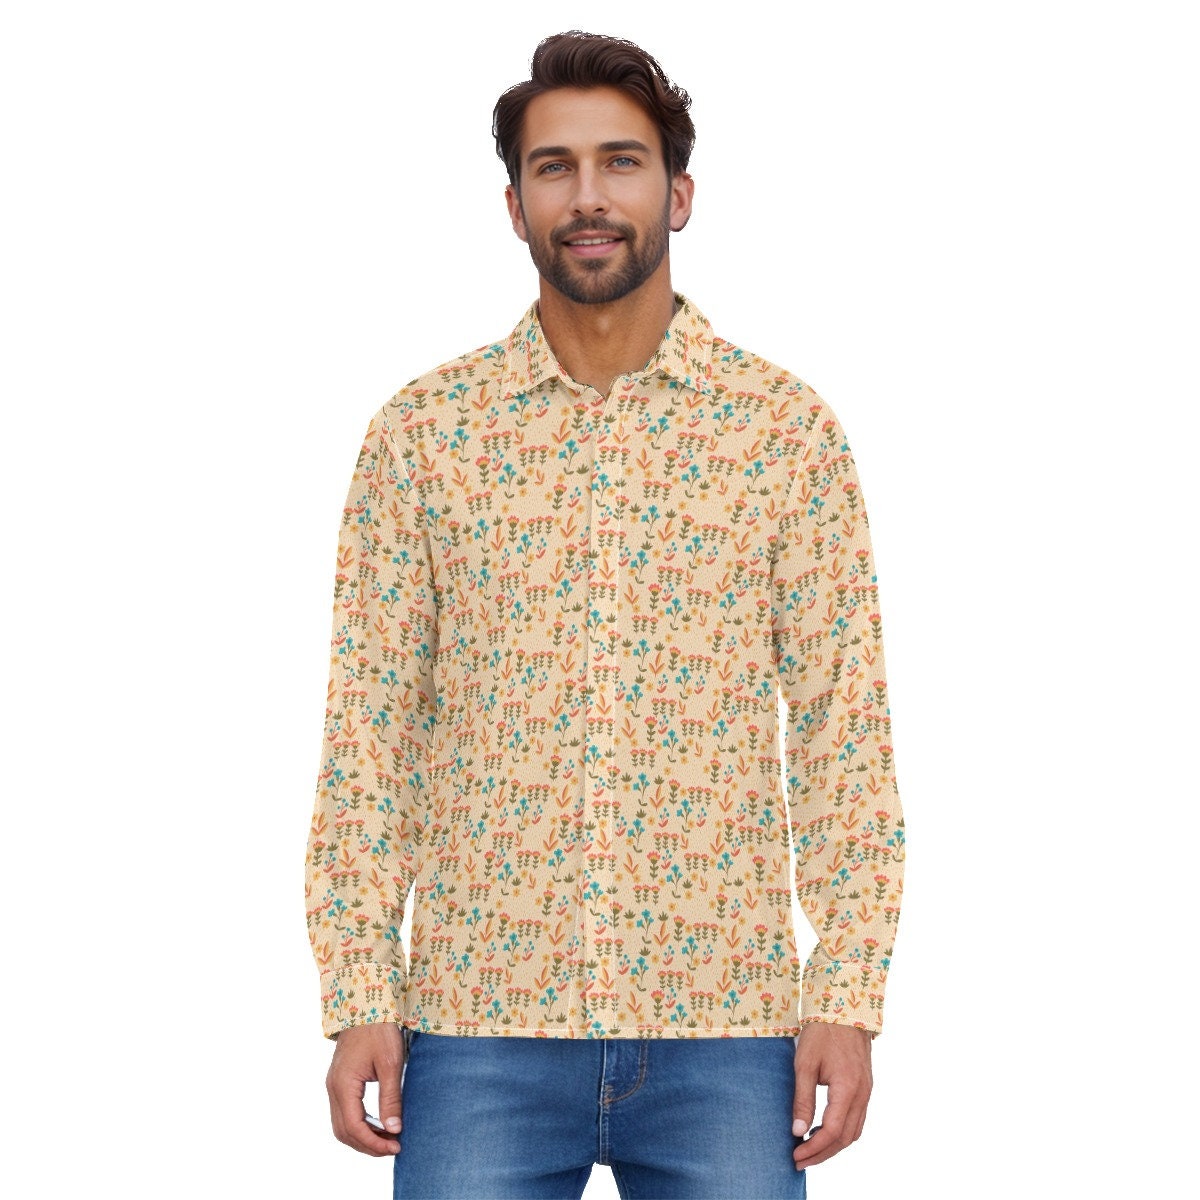 chemise de style vintage des années 70, chemise beige, chemise florale pour hommes, vêtements des années 70 pour hommes, chemise rétro pour hommes, chemise hippie pour hommes, chemise pour hommes des années 70, chemise inspirée des années 70